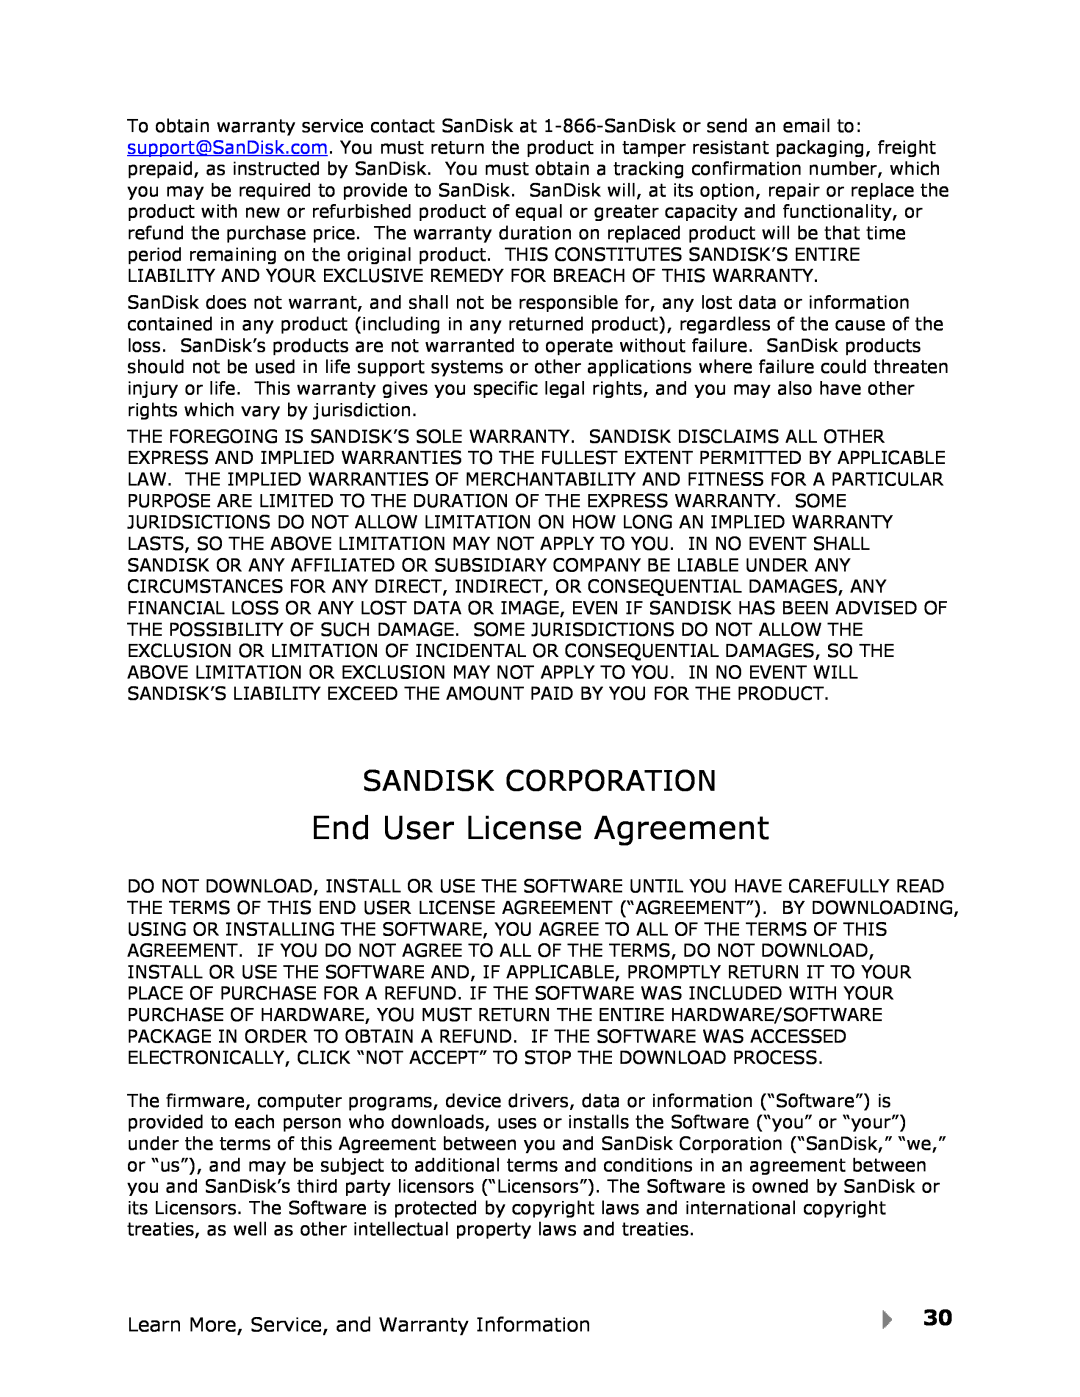 SanDisk View user manual End User License Agreement, Sandisk Corporation 